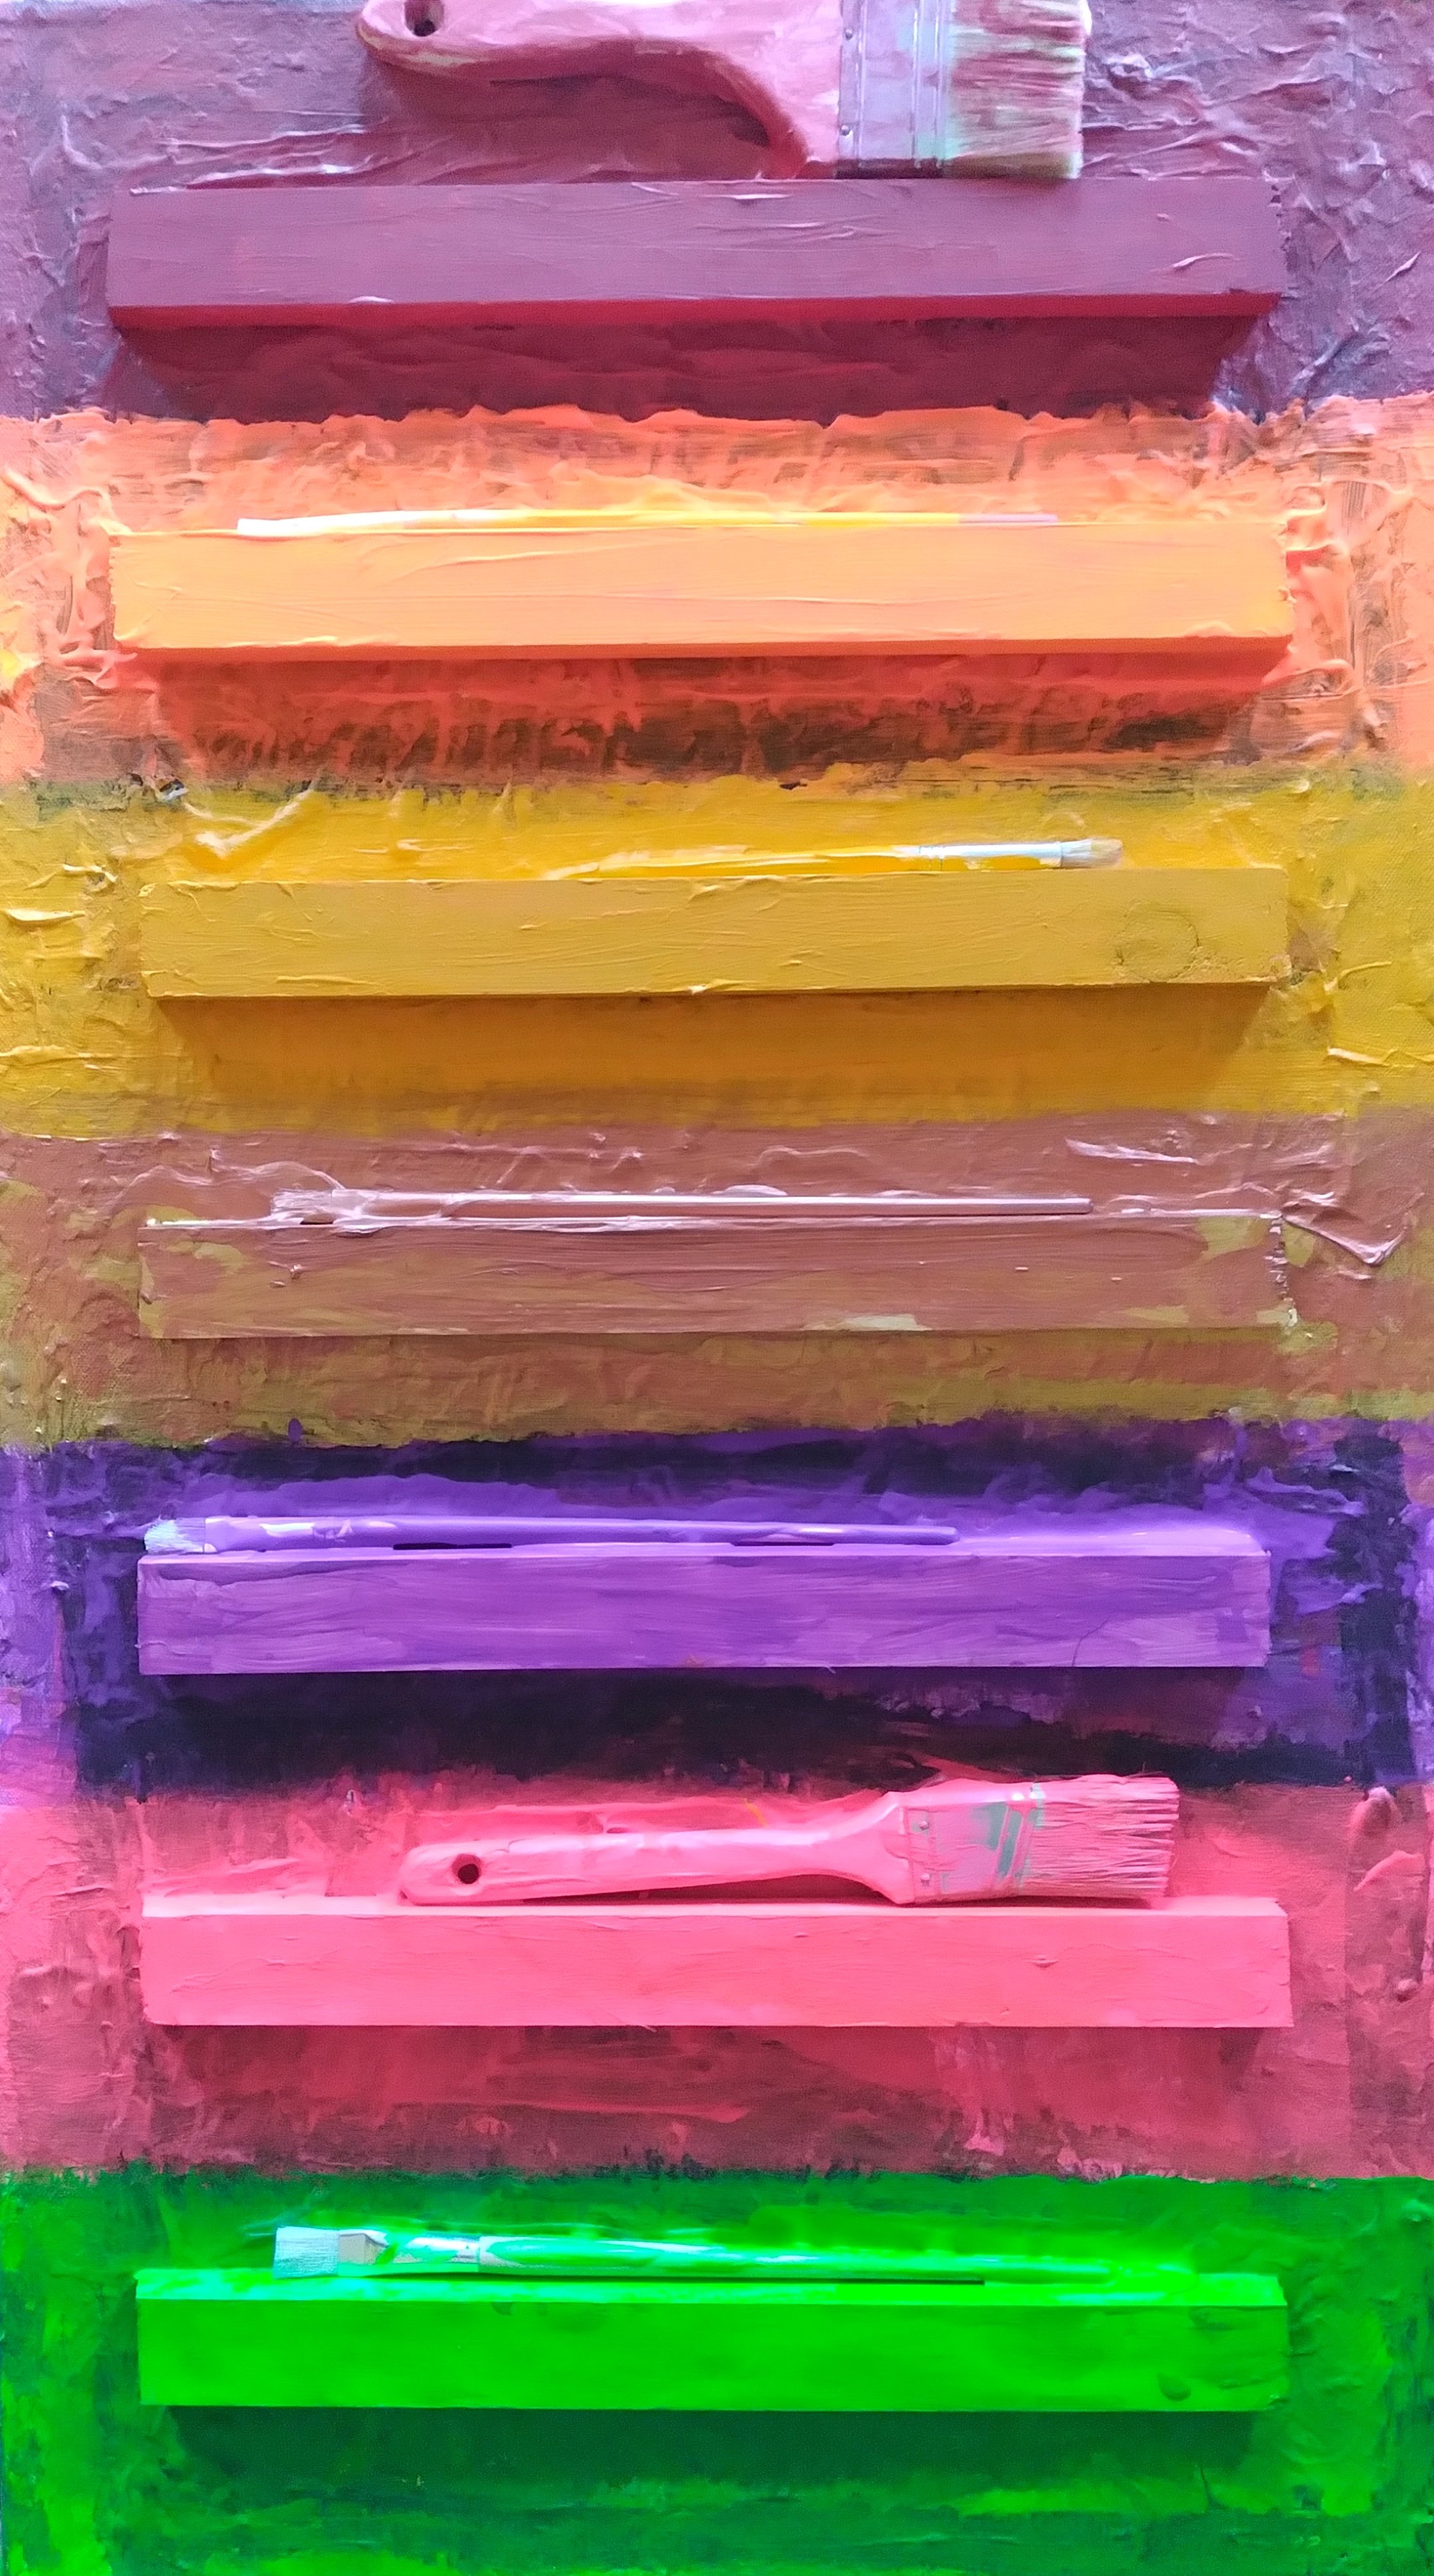 Over the Rainbow, 2013. Oil, acrylic, mixed media on canvas. 36” x 20”.